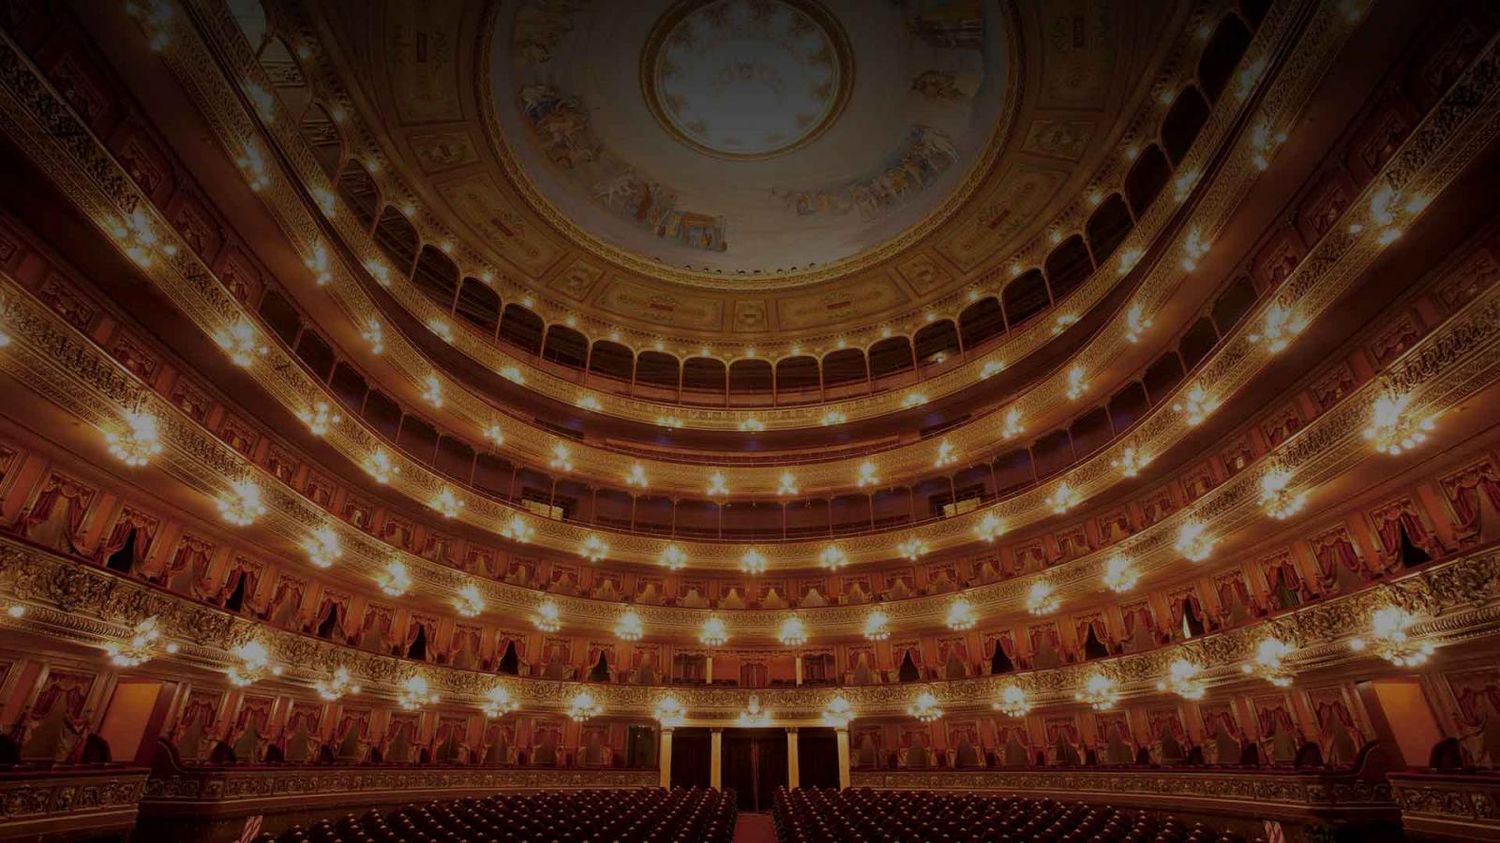 Tras permanecer cerrado casi 3 meses, el Teatro Colón vuelve a abrir sus puertas al público